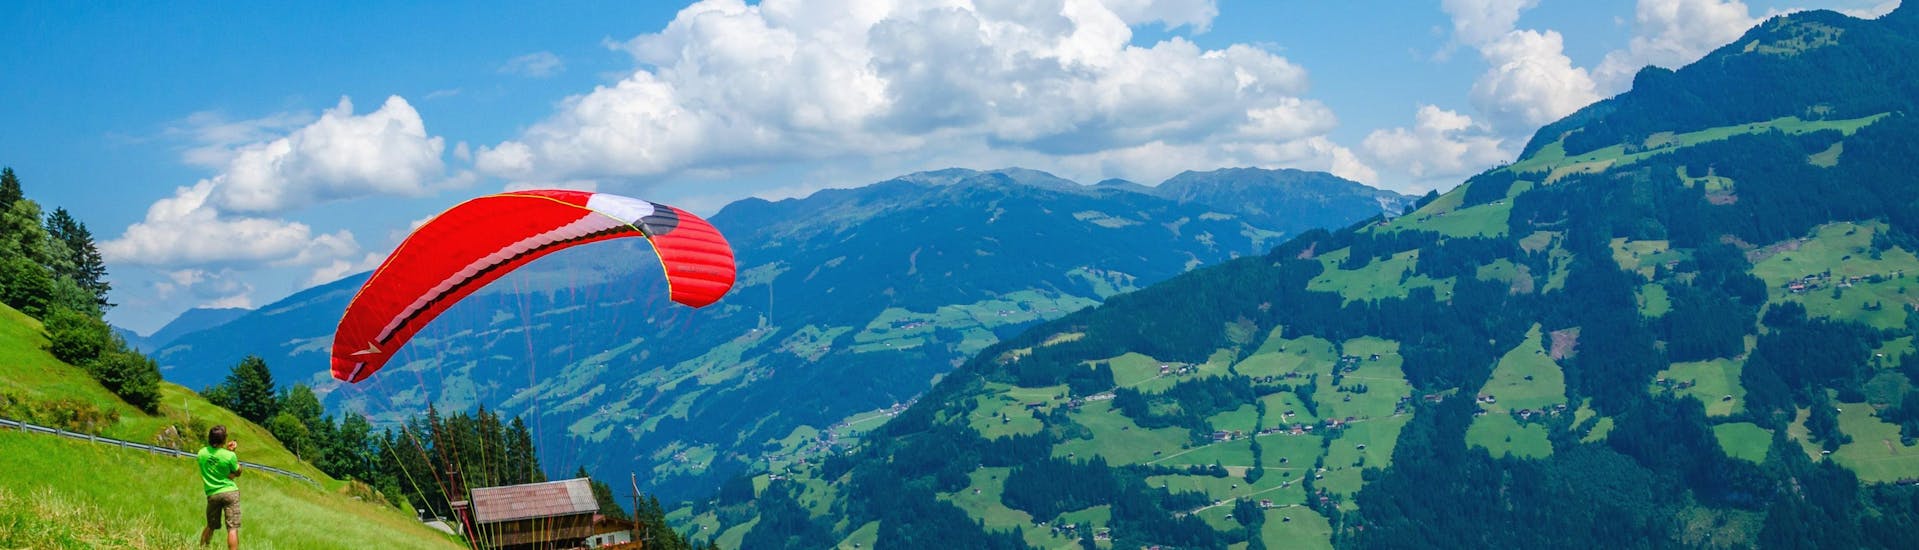 Wunderschöne Aussicht auf die Zillertaler Bergwelt in Mayrhofen, ein beliebtes Gebiet für Paraglider.